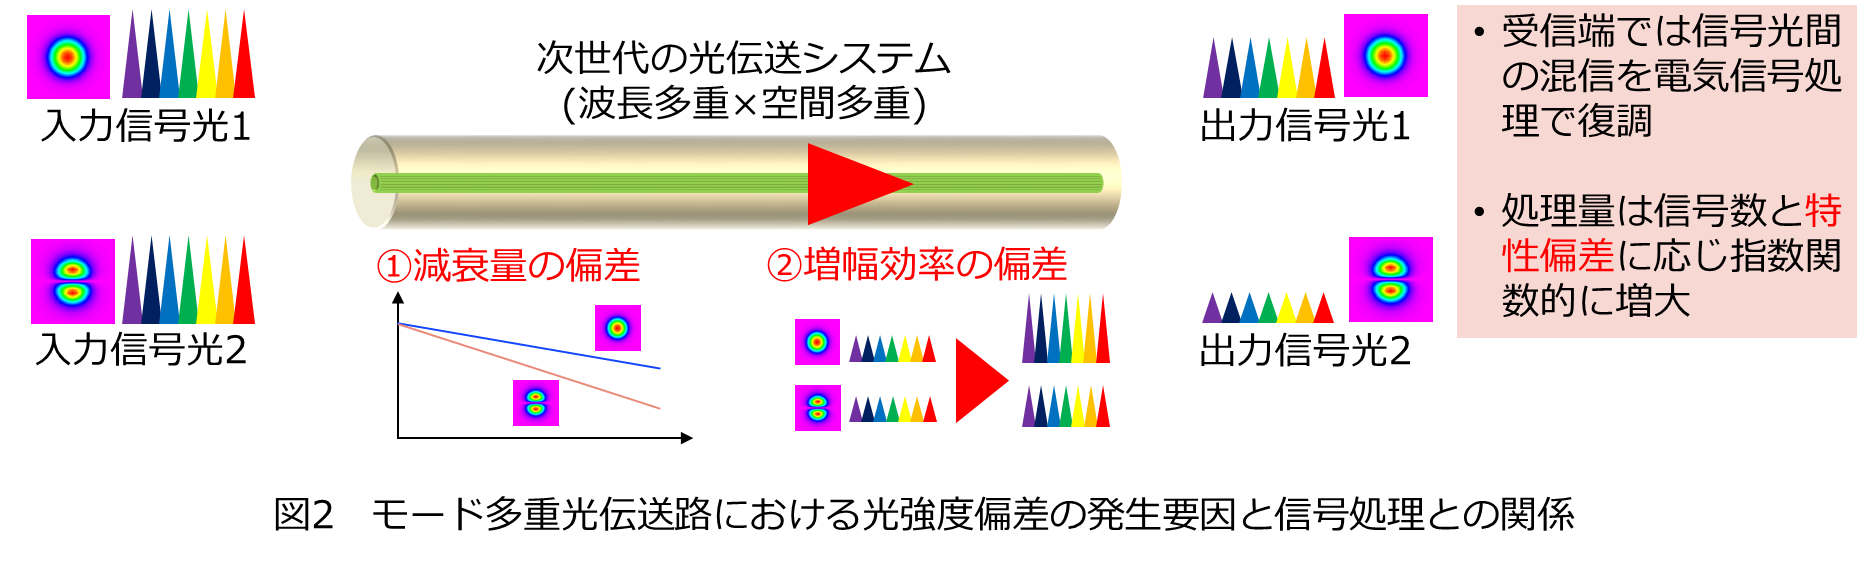 図2 モード多重光伝送路における光強度偏差の発生要因と信号処理との関係